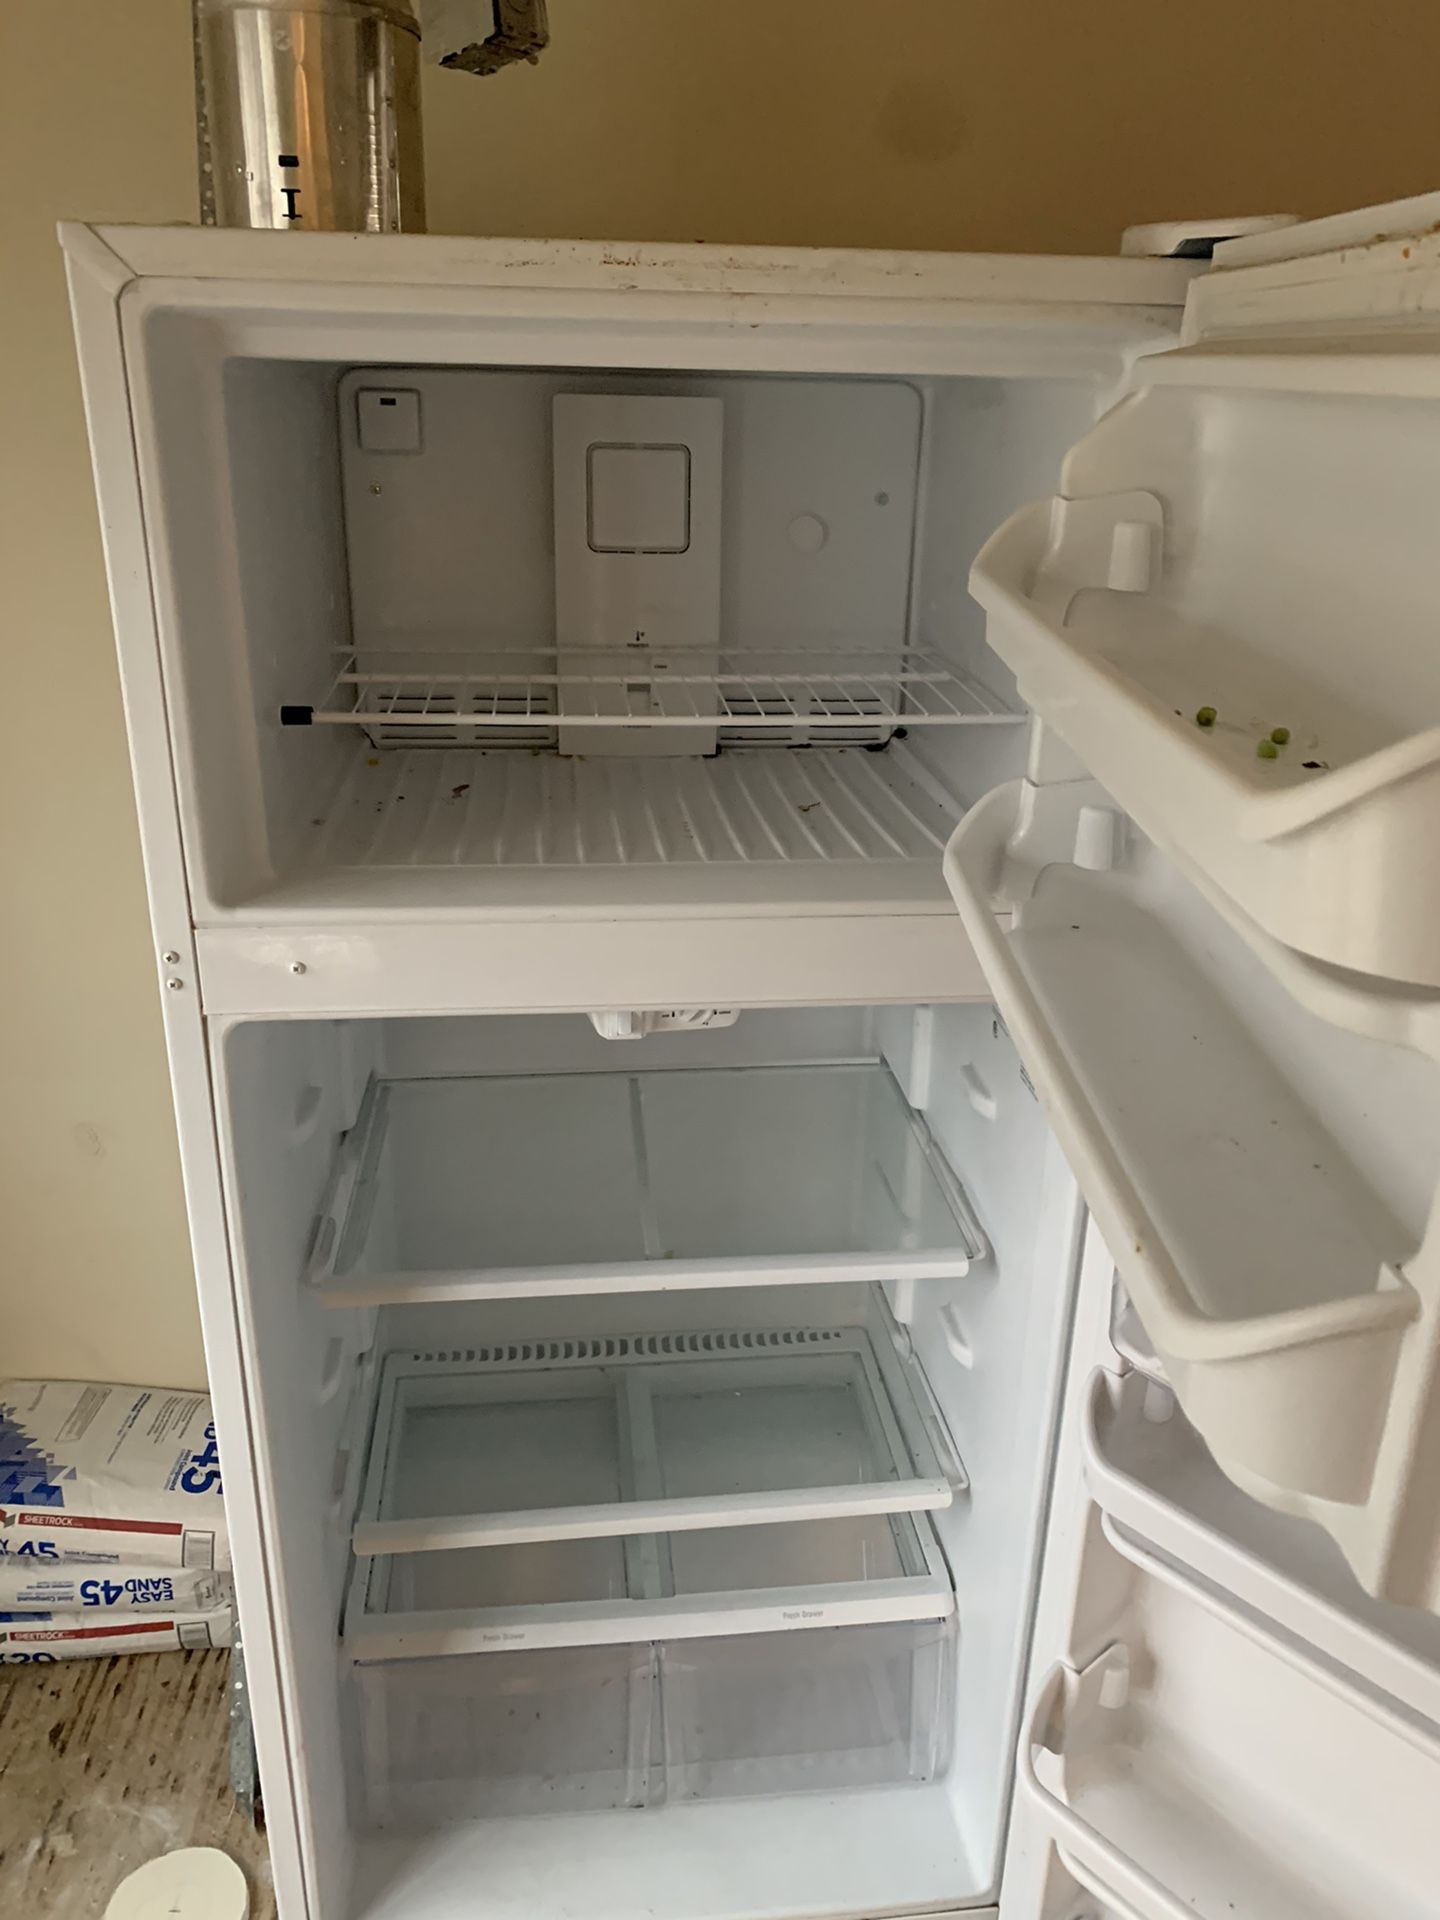 White fridge